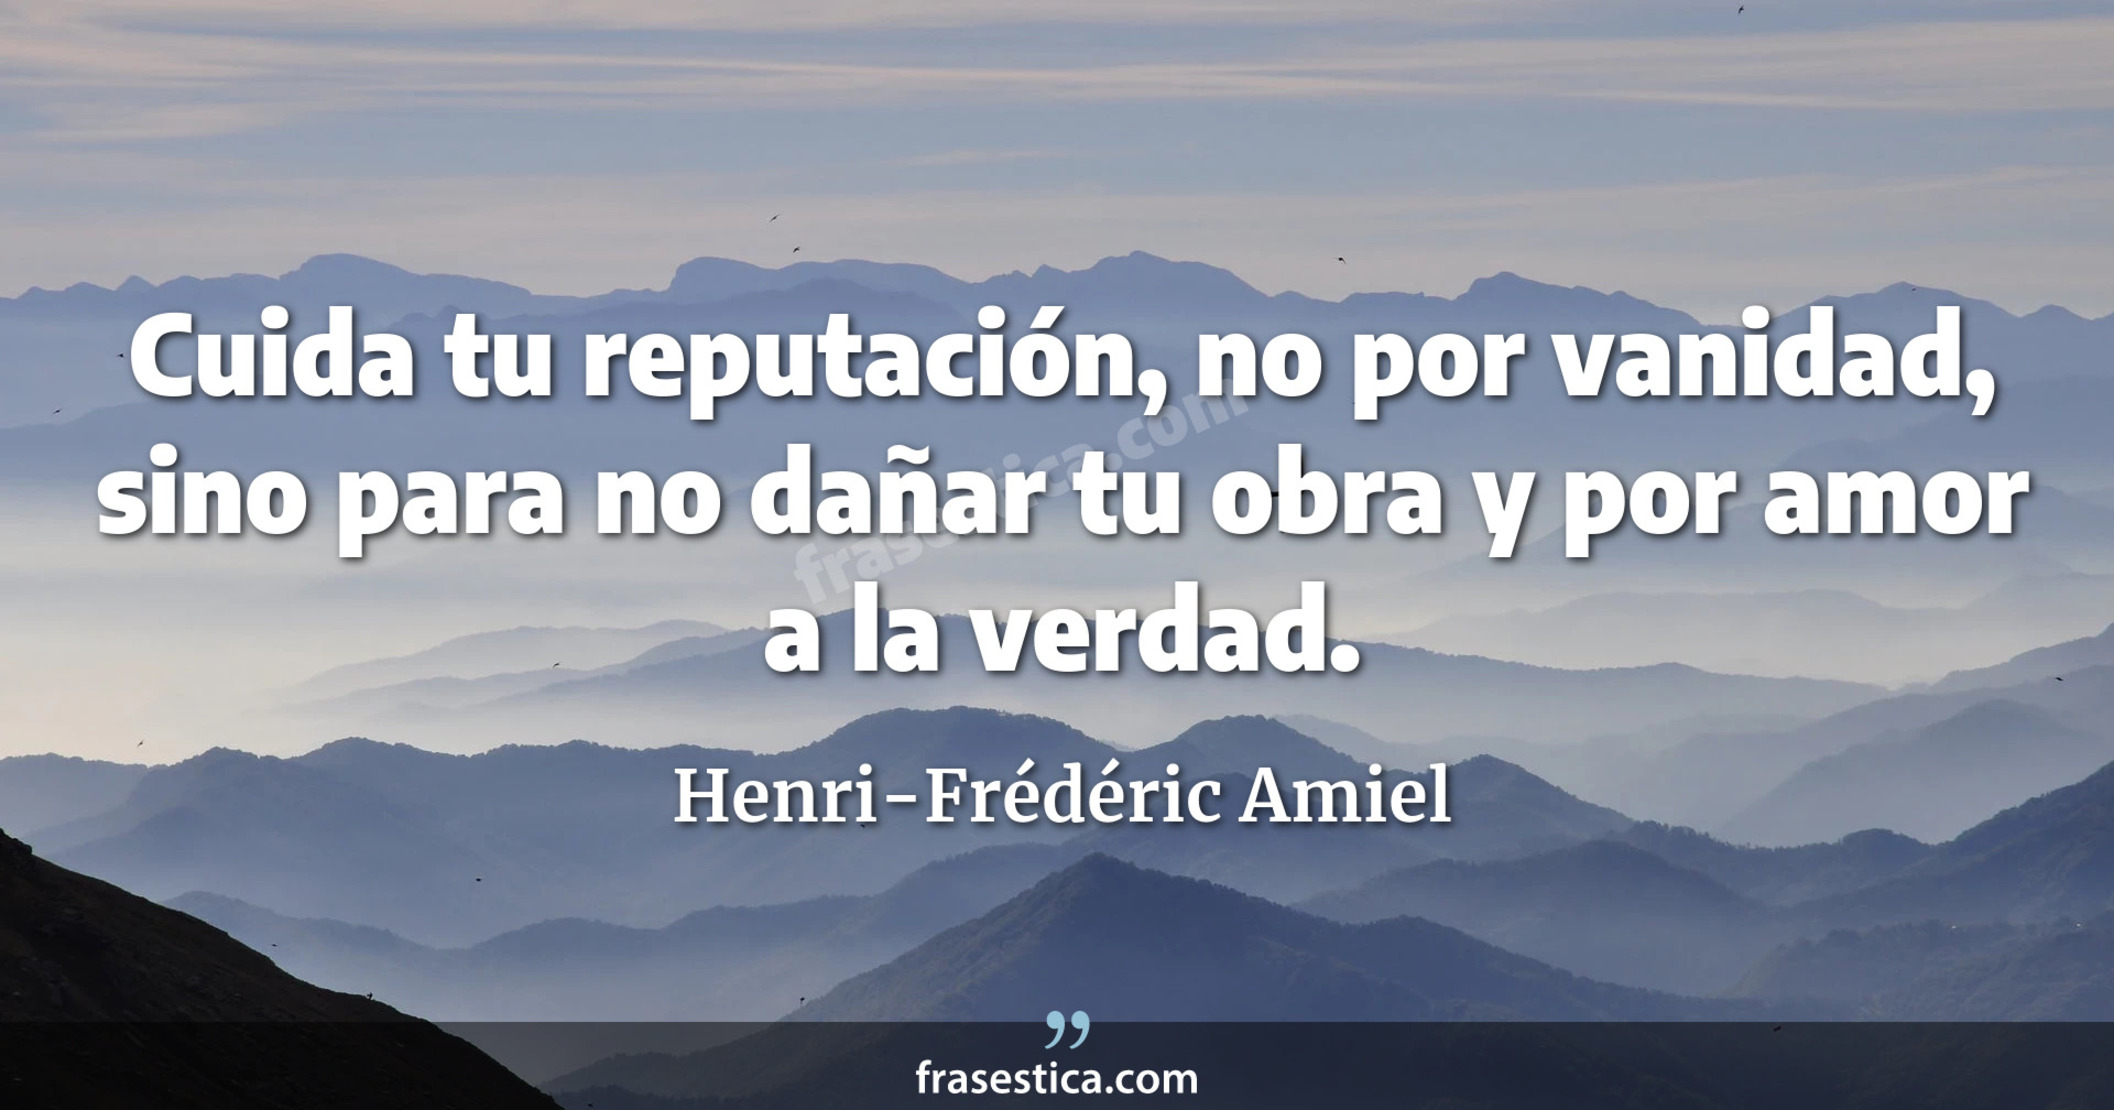 Cuida tu reputación, no por vanidad, sino para no dañar tu obra y por amor a la verdad. - Henri-Frédéric Amiel